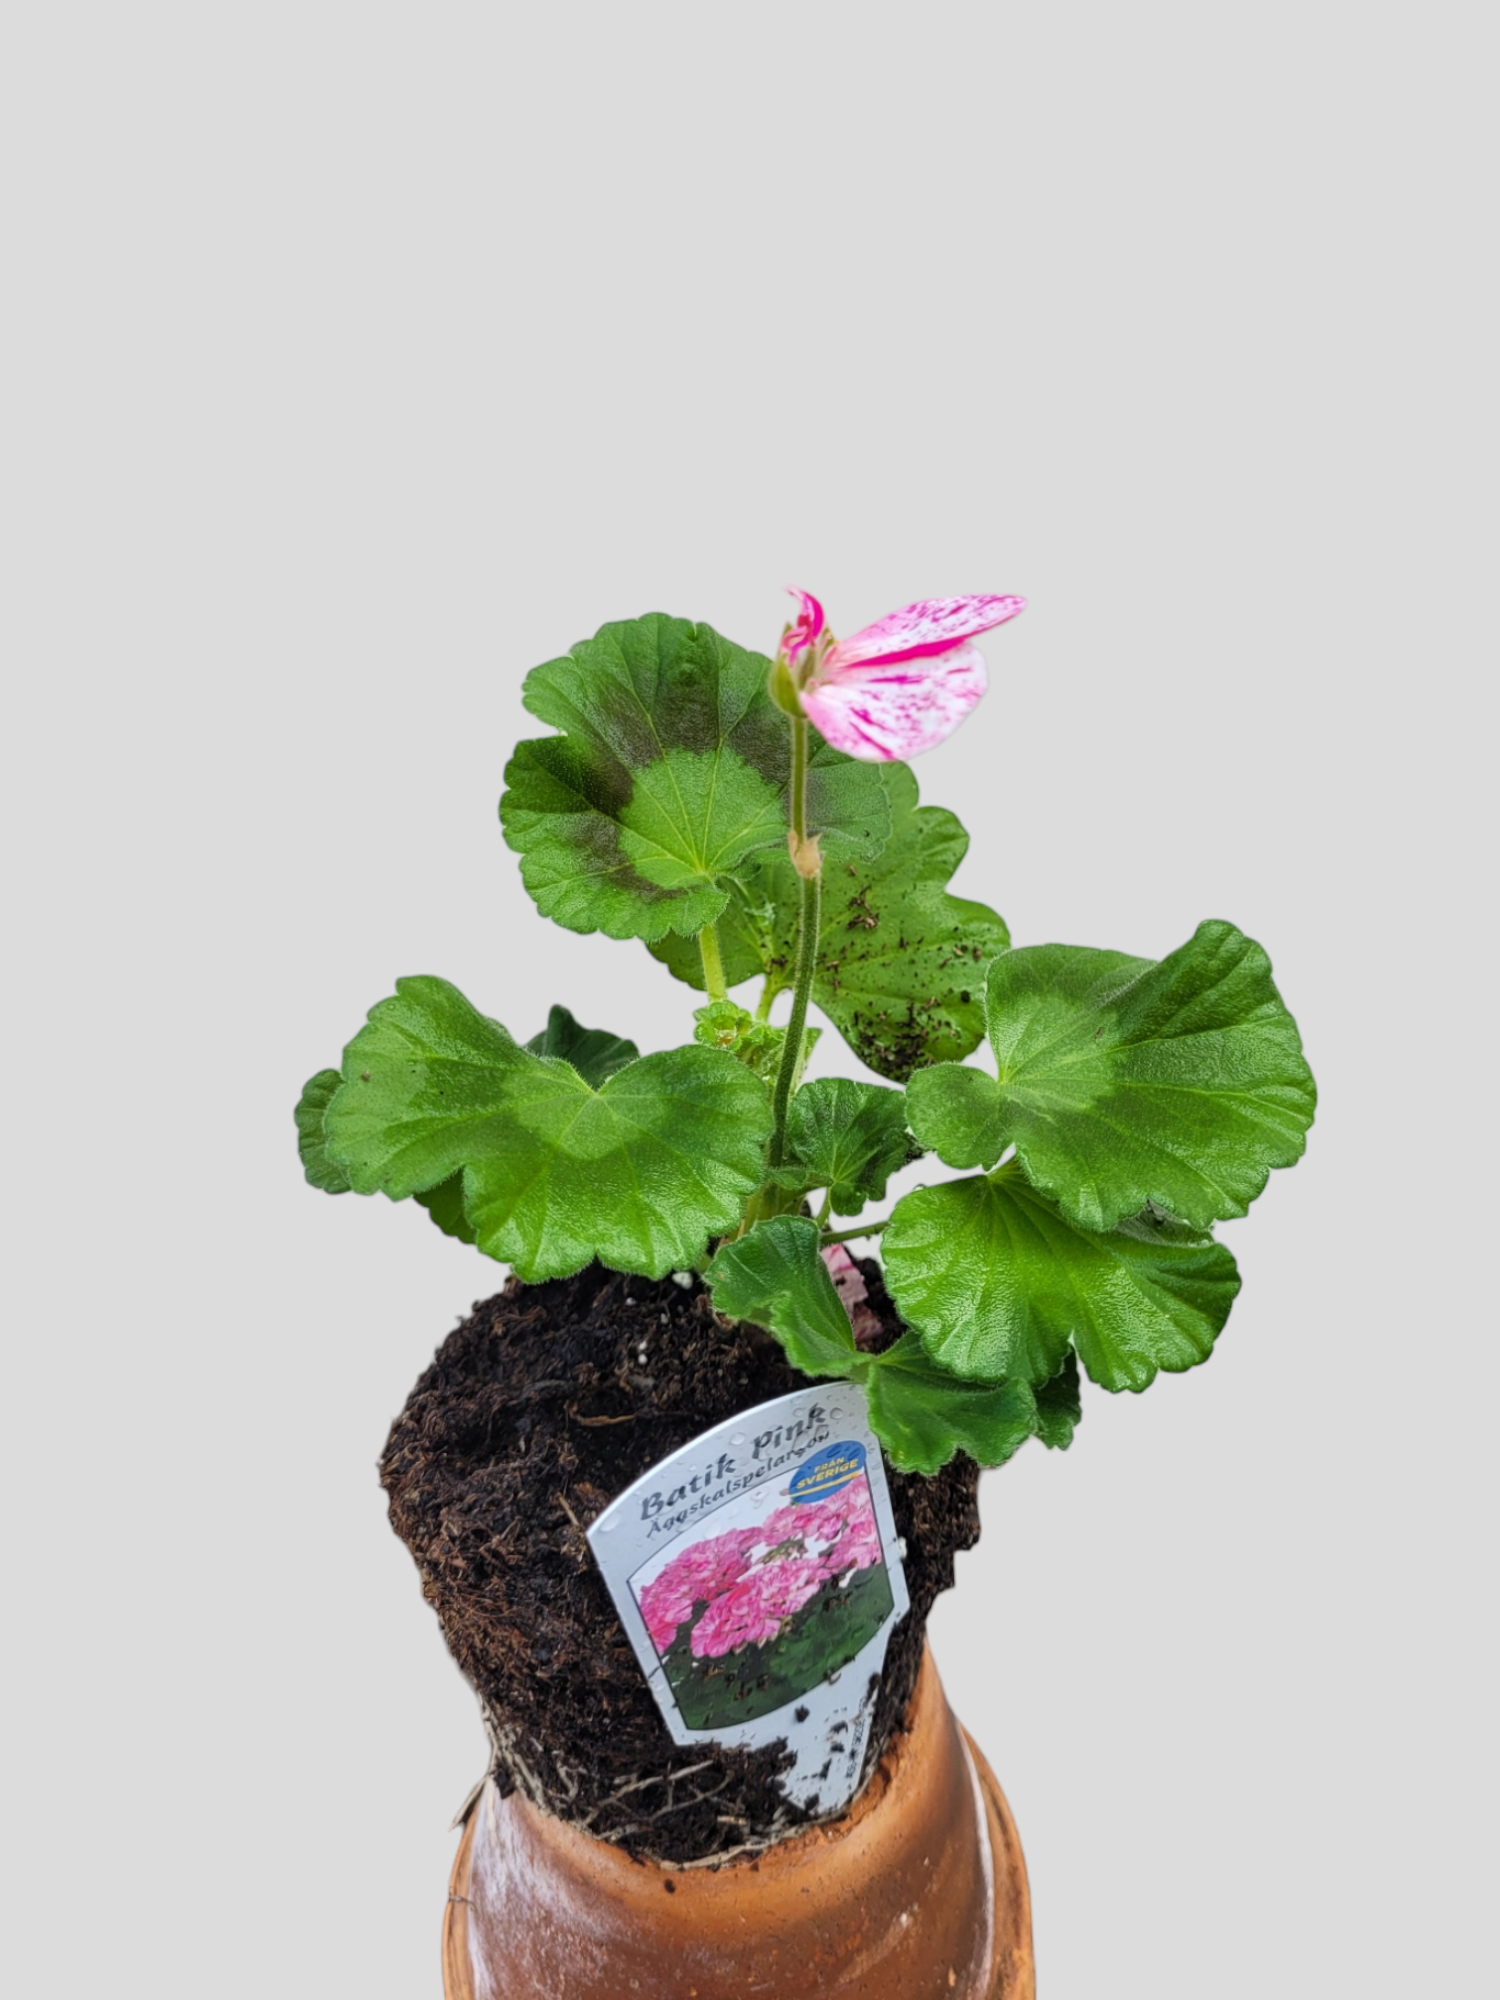 Pelargon/ Geranium 'Batik pink' *News 2023*